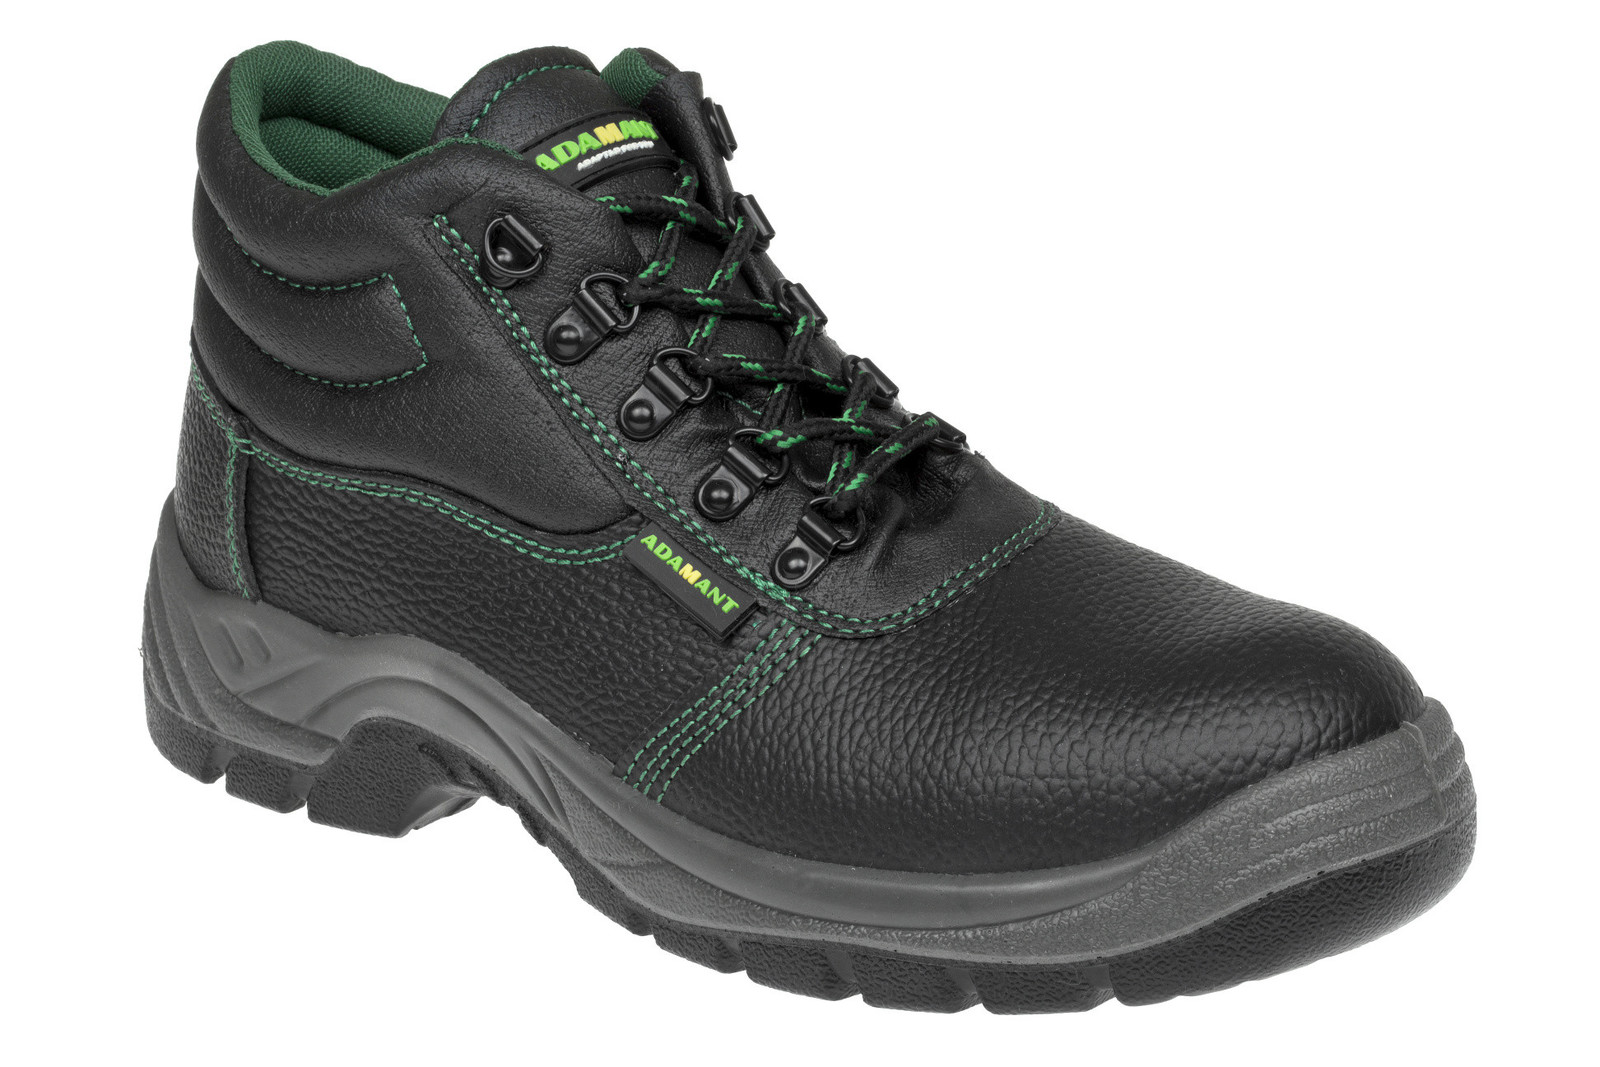 Bezpečnostná obuv Adamant Classic S1P - veľkosť: 46, farba: čierna